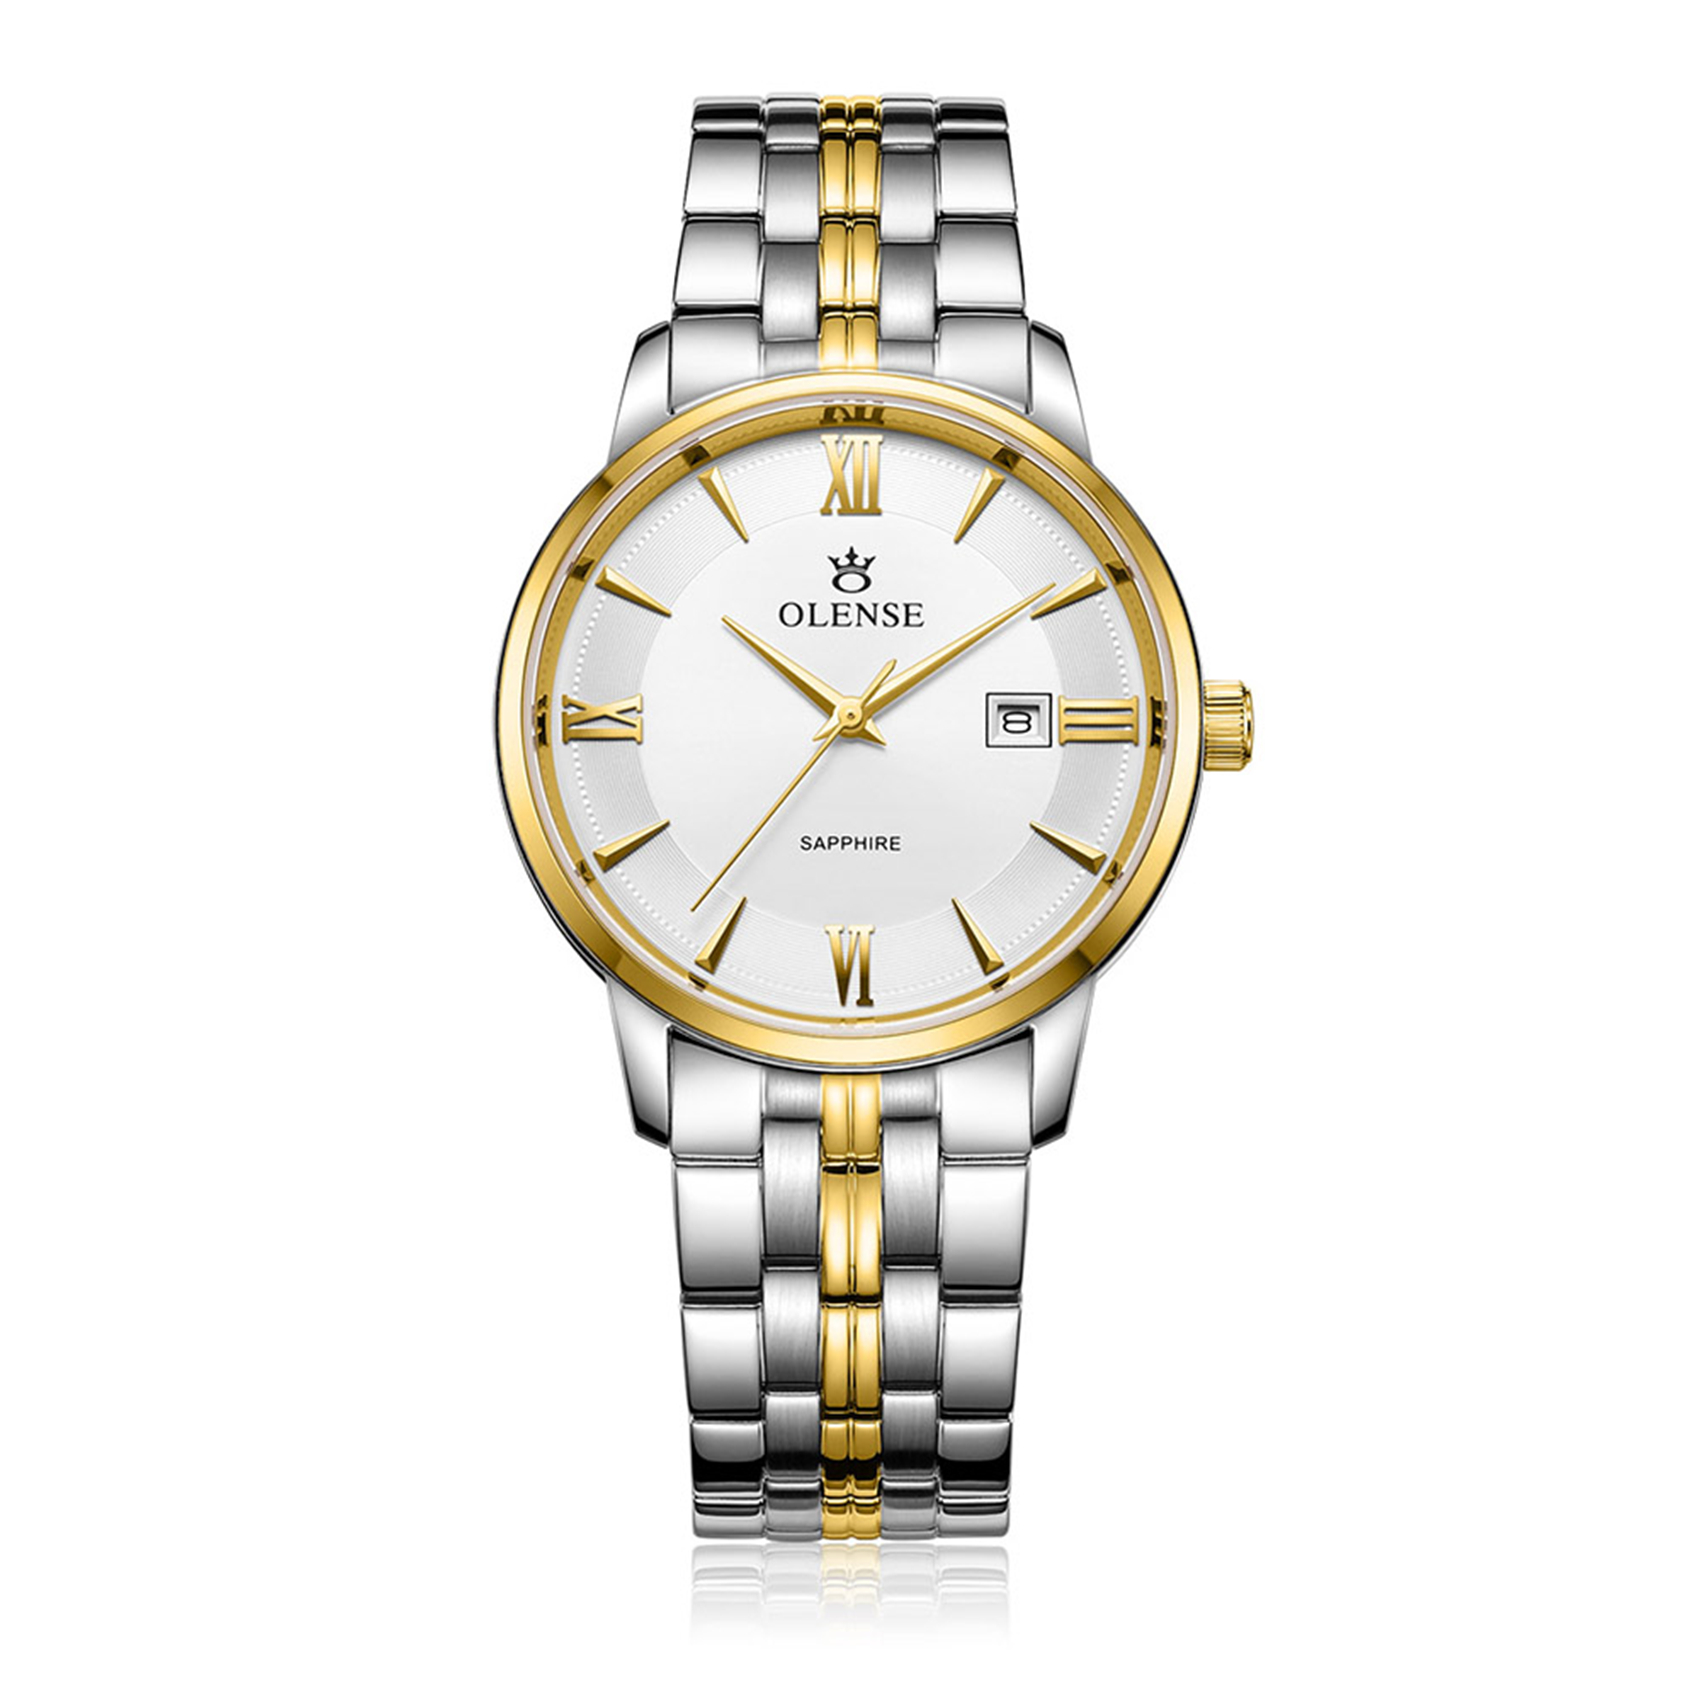 OLENSE - Men's Luxury Wristwatch, Analog, Date, Bracelet, 39mm Gold & Silver